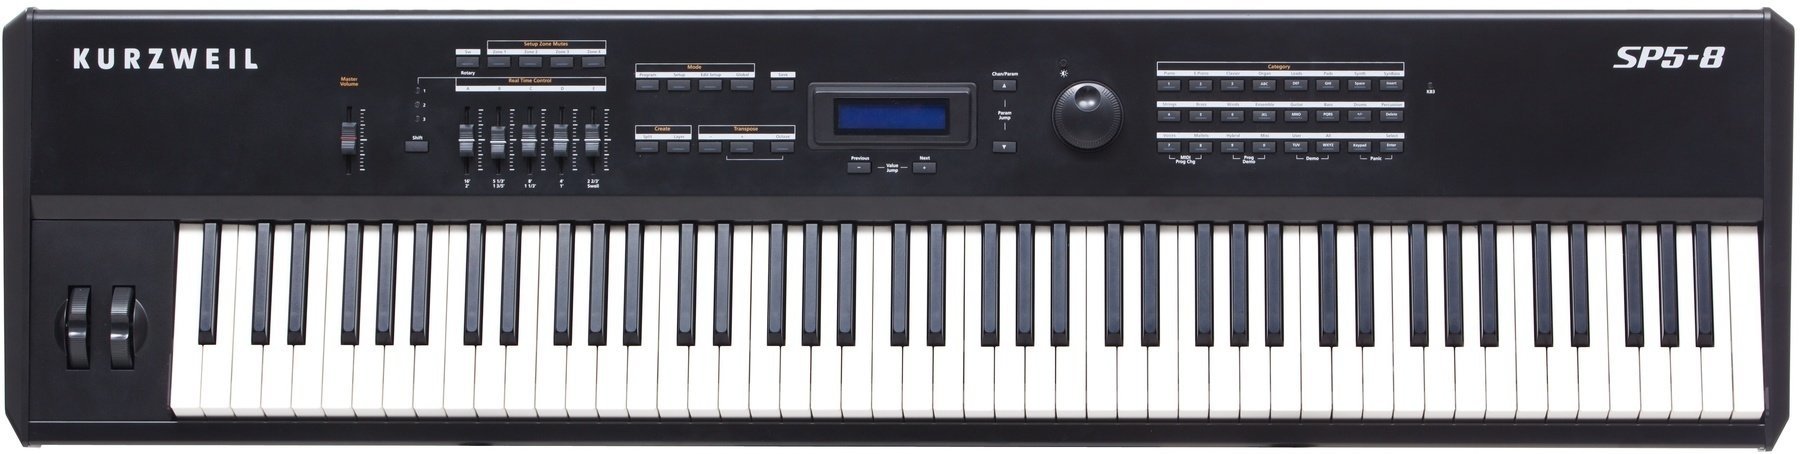 Piano da Palco Kurzweil SP5-8